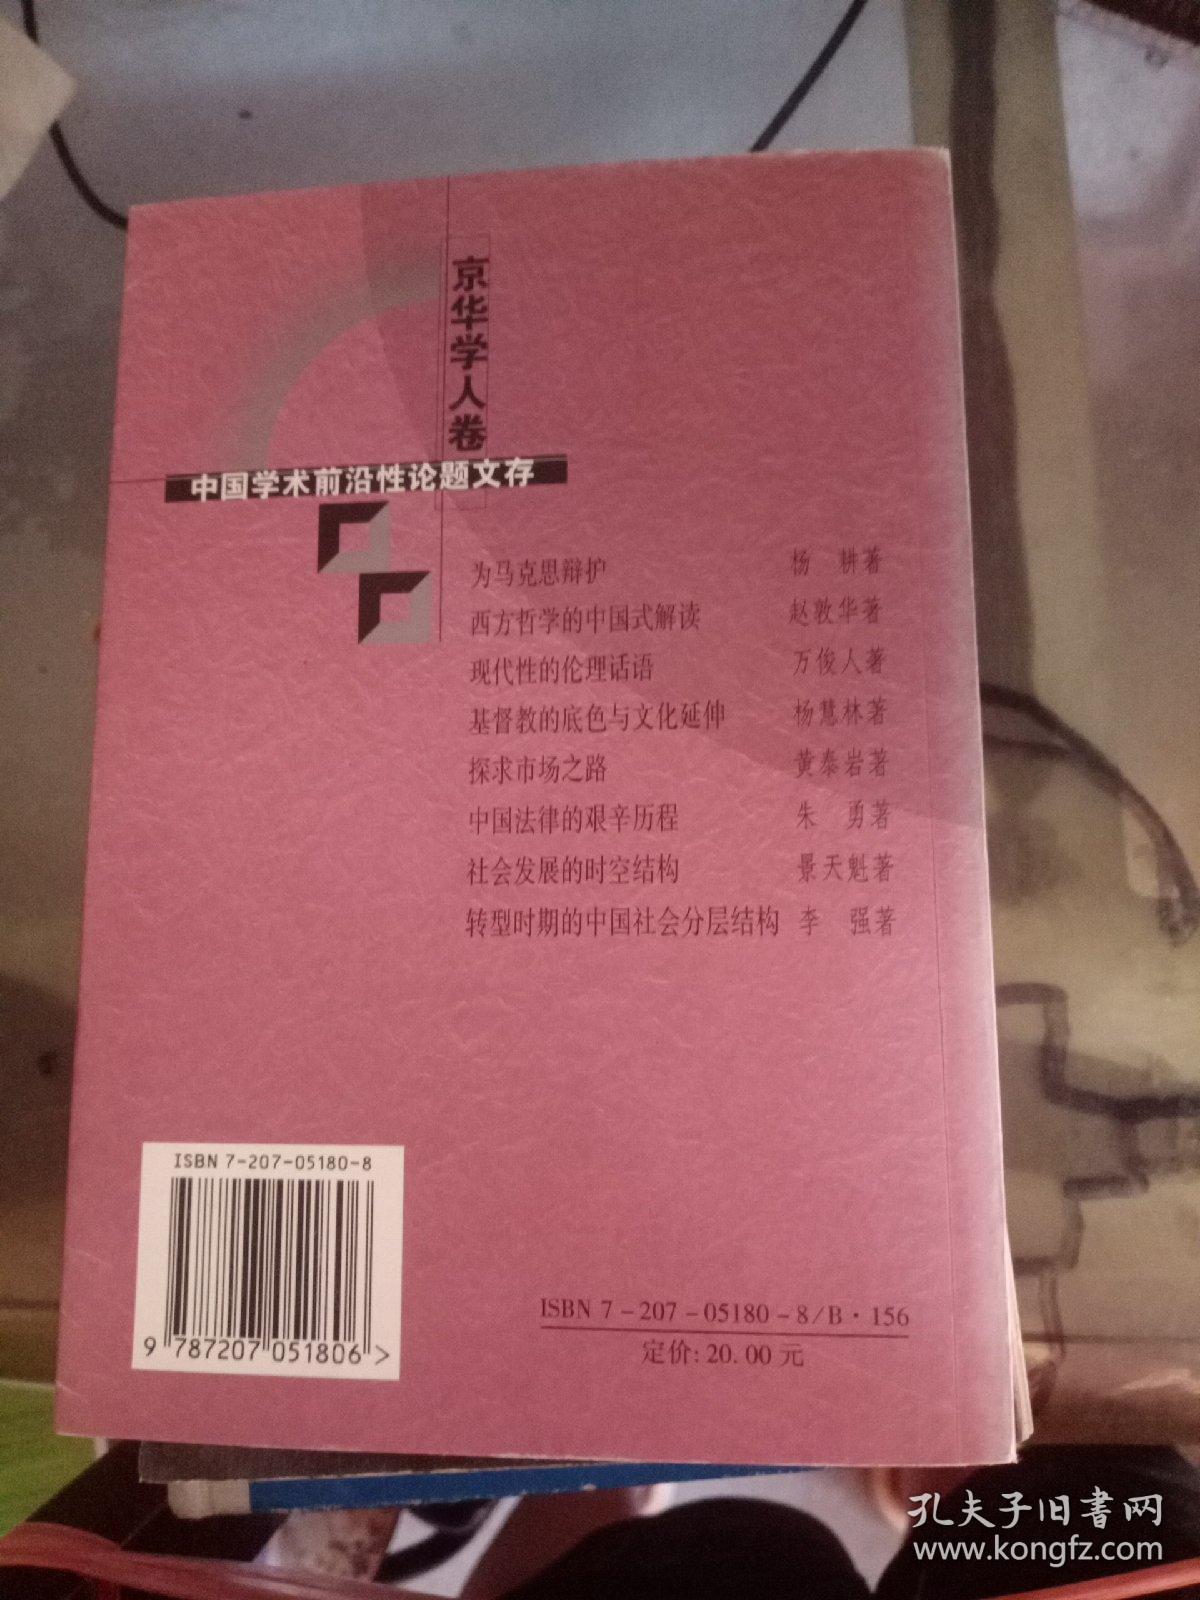 京华学人卷 伦理话语现代性的中国学术前沿性论题文存